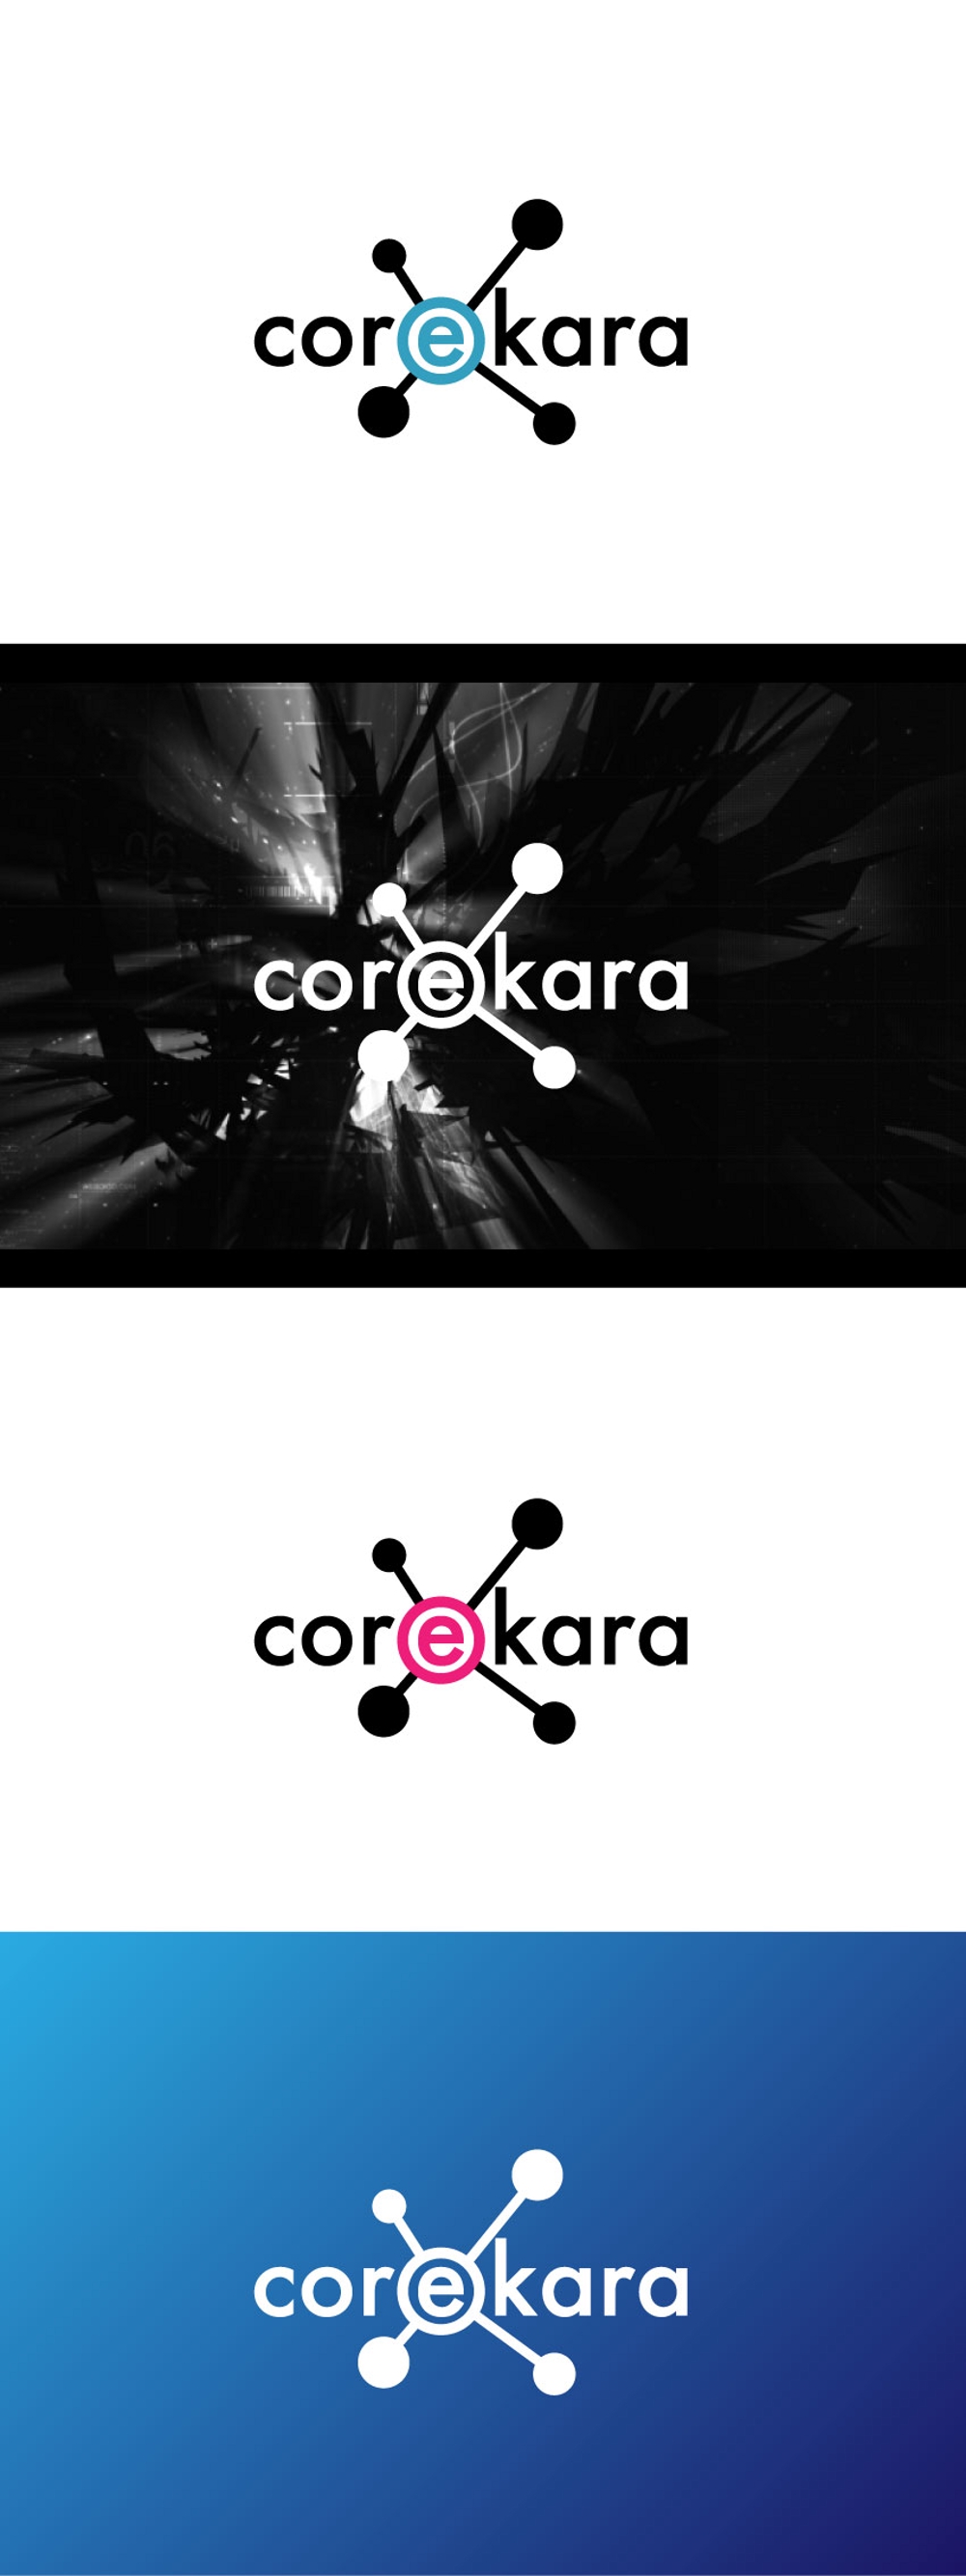 corekara-02.jpg